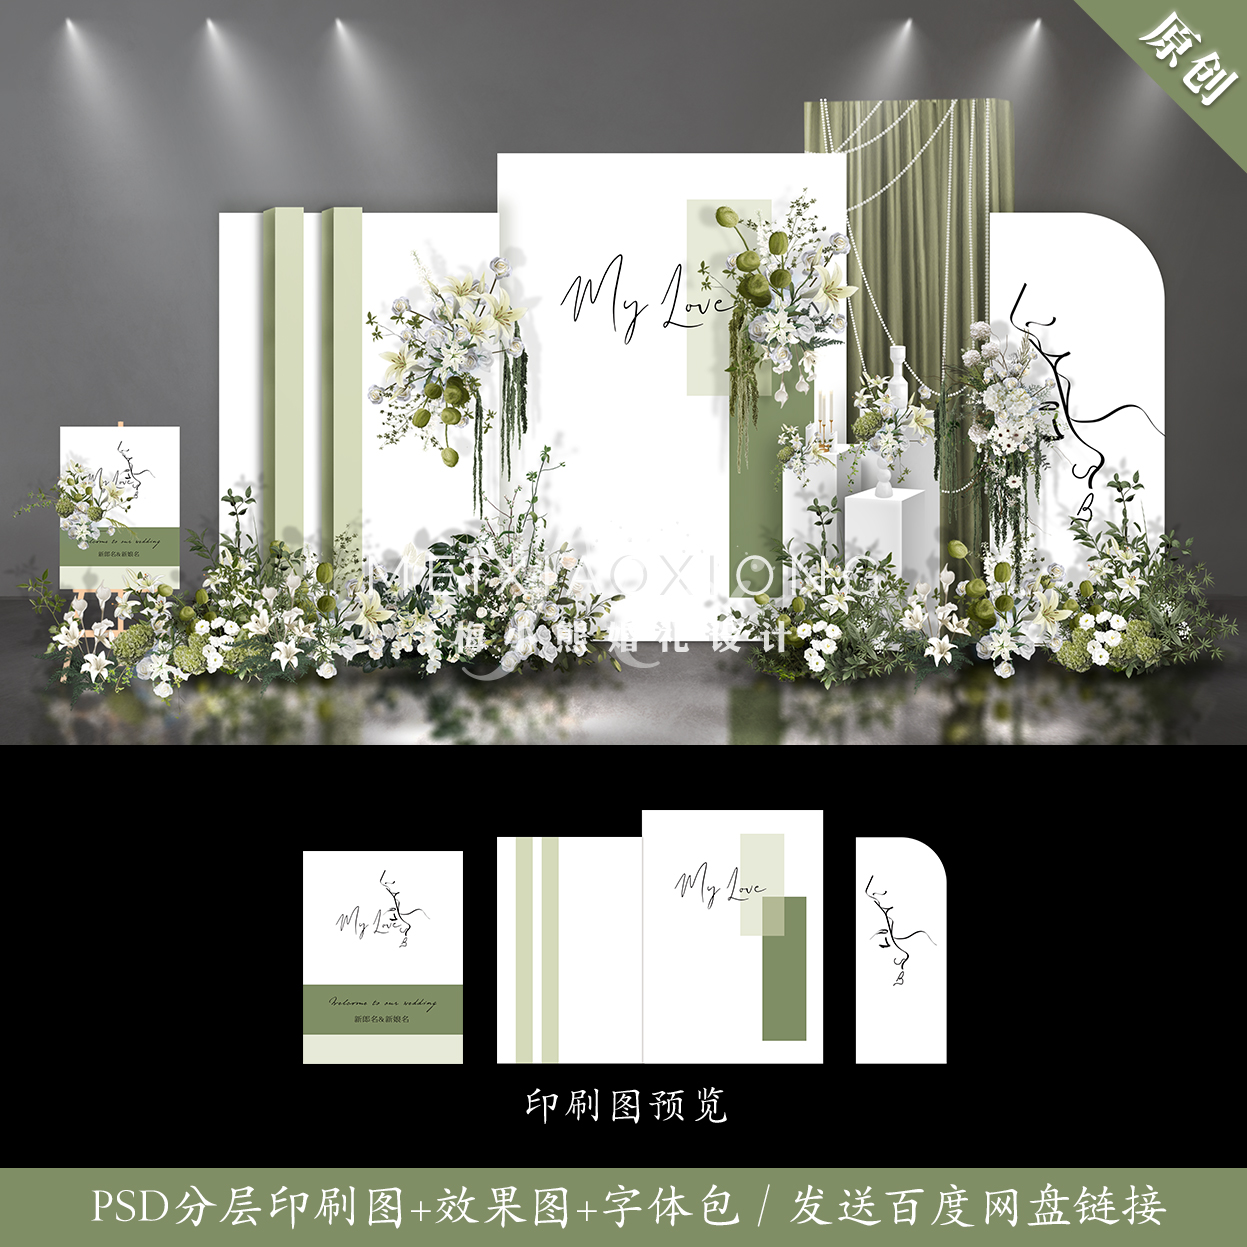 白绿色婚礼设计效果图 结婚背景墙迎宾签到区KT板布置PSD素材模板